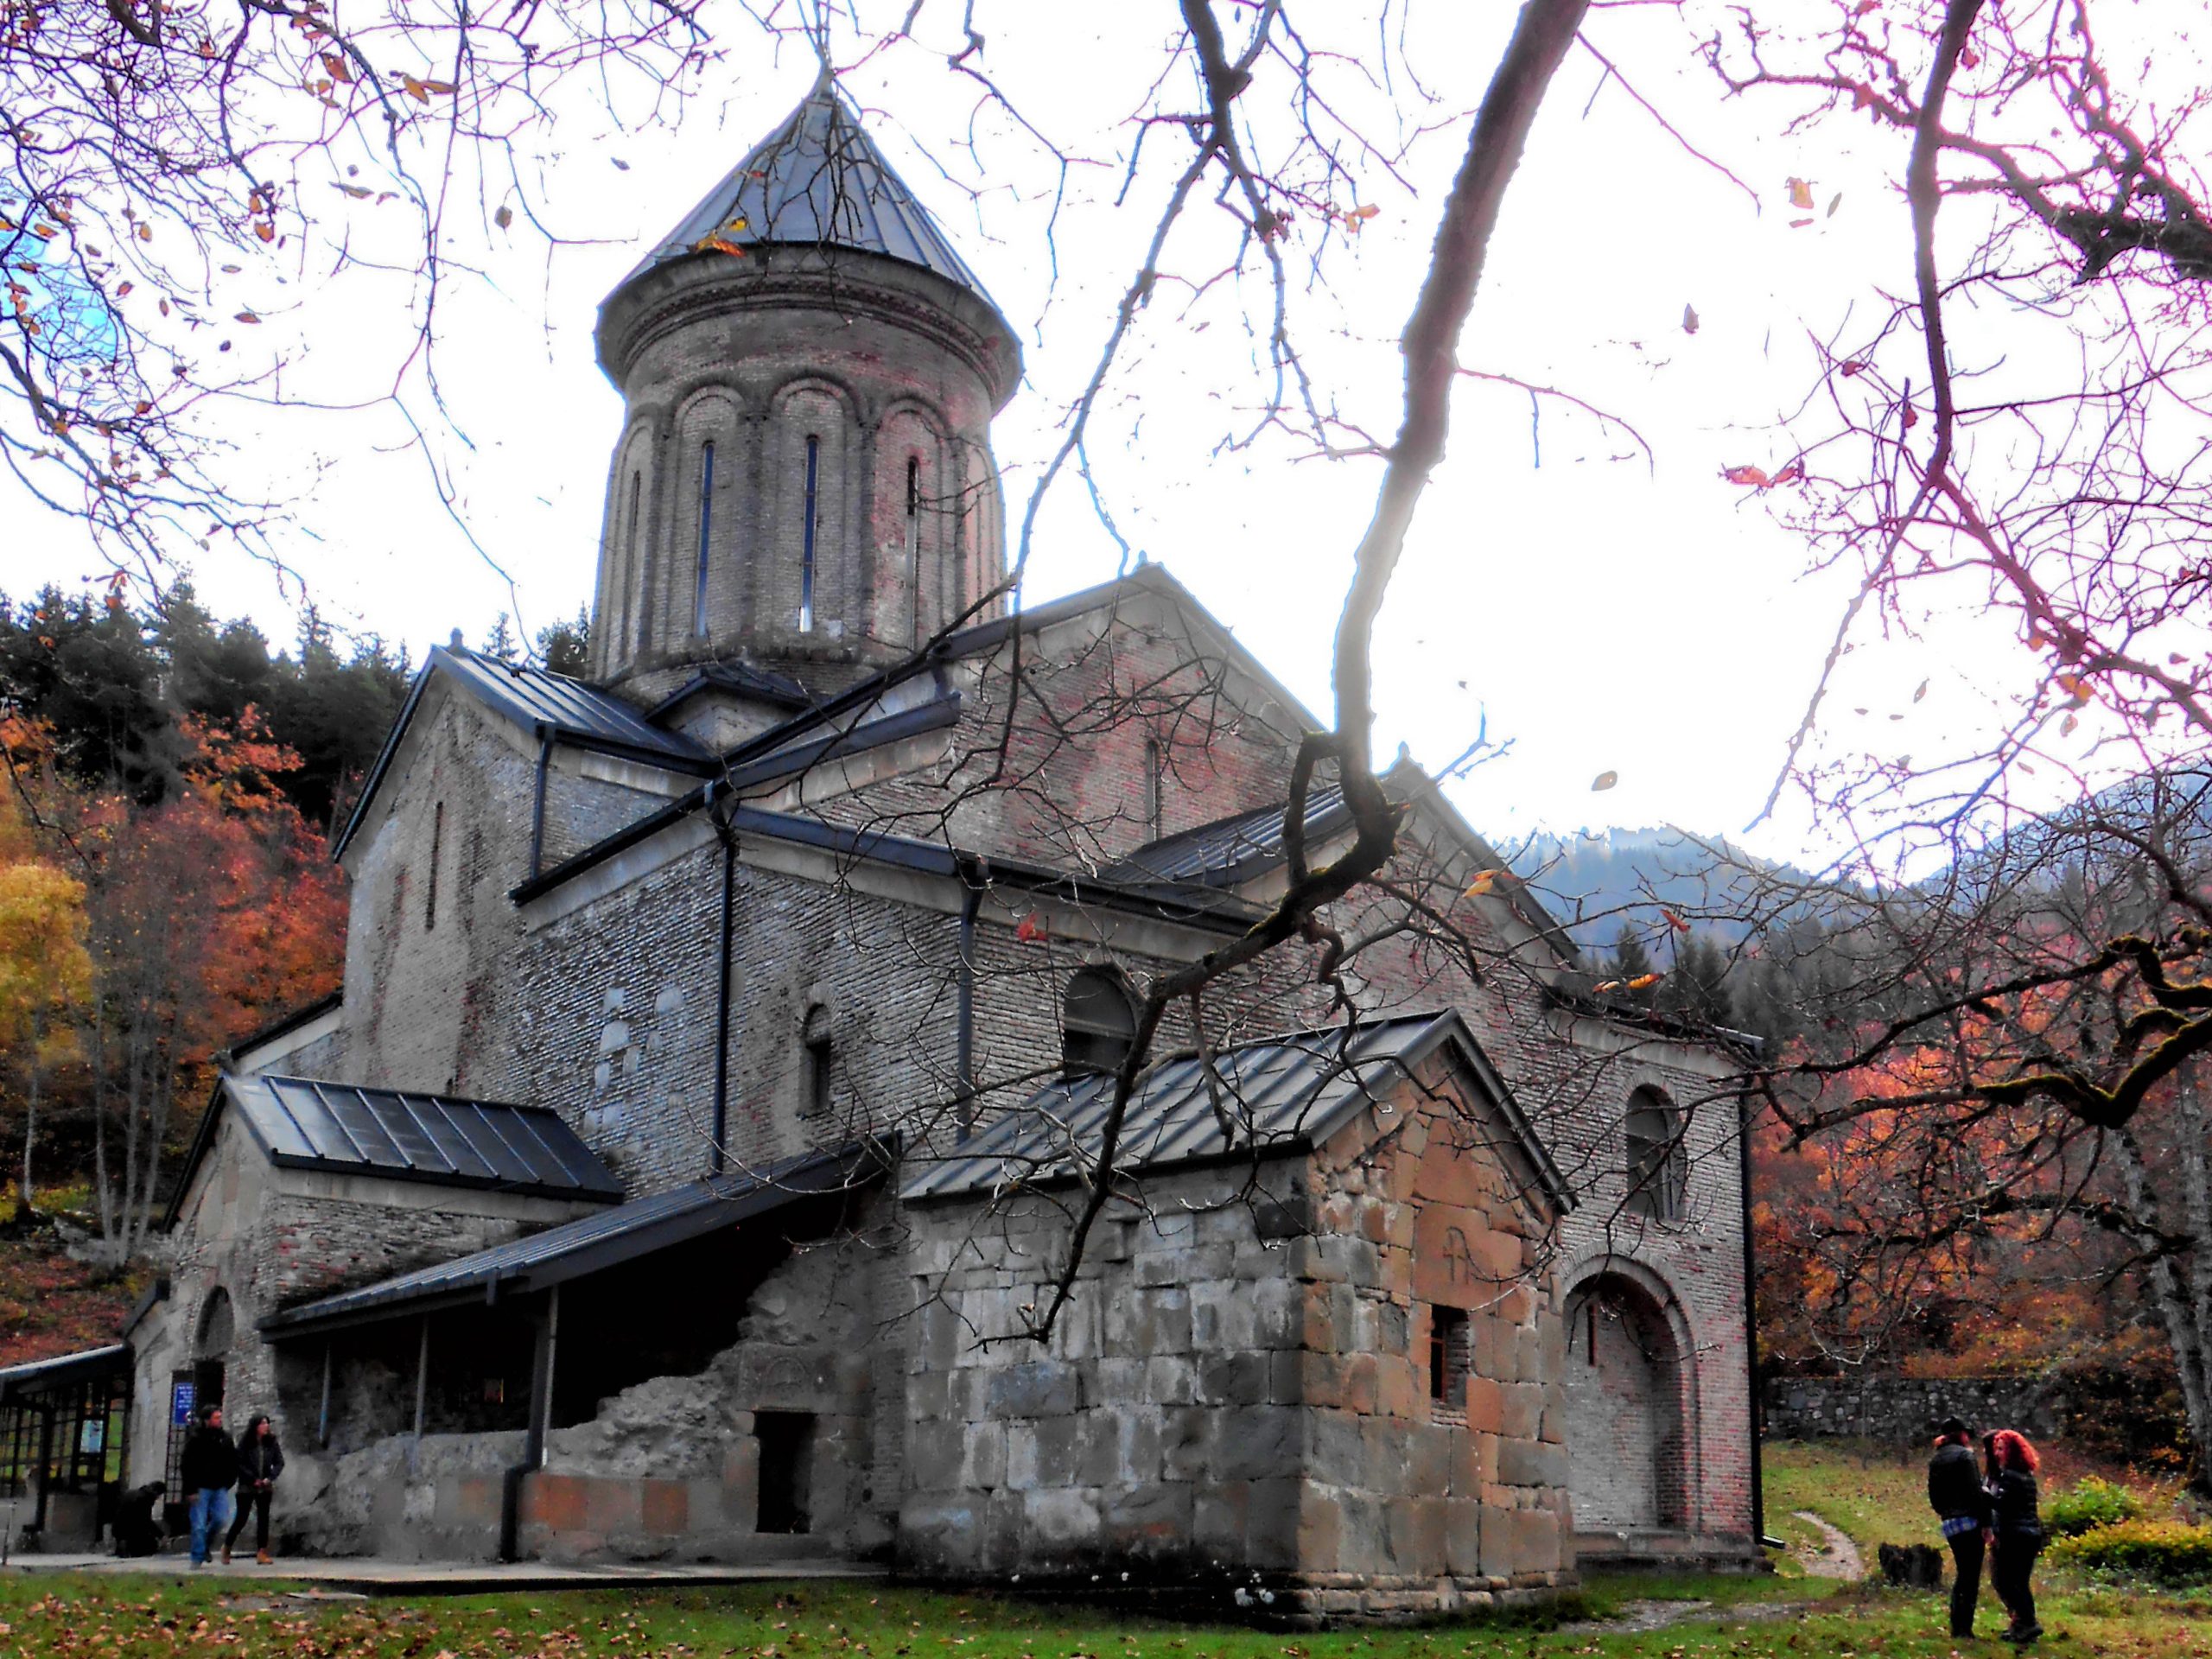 Kintsvisi Monastery scaled #новости Грузинская Православная Церковь, Кинцвиси, монастырь